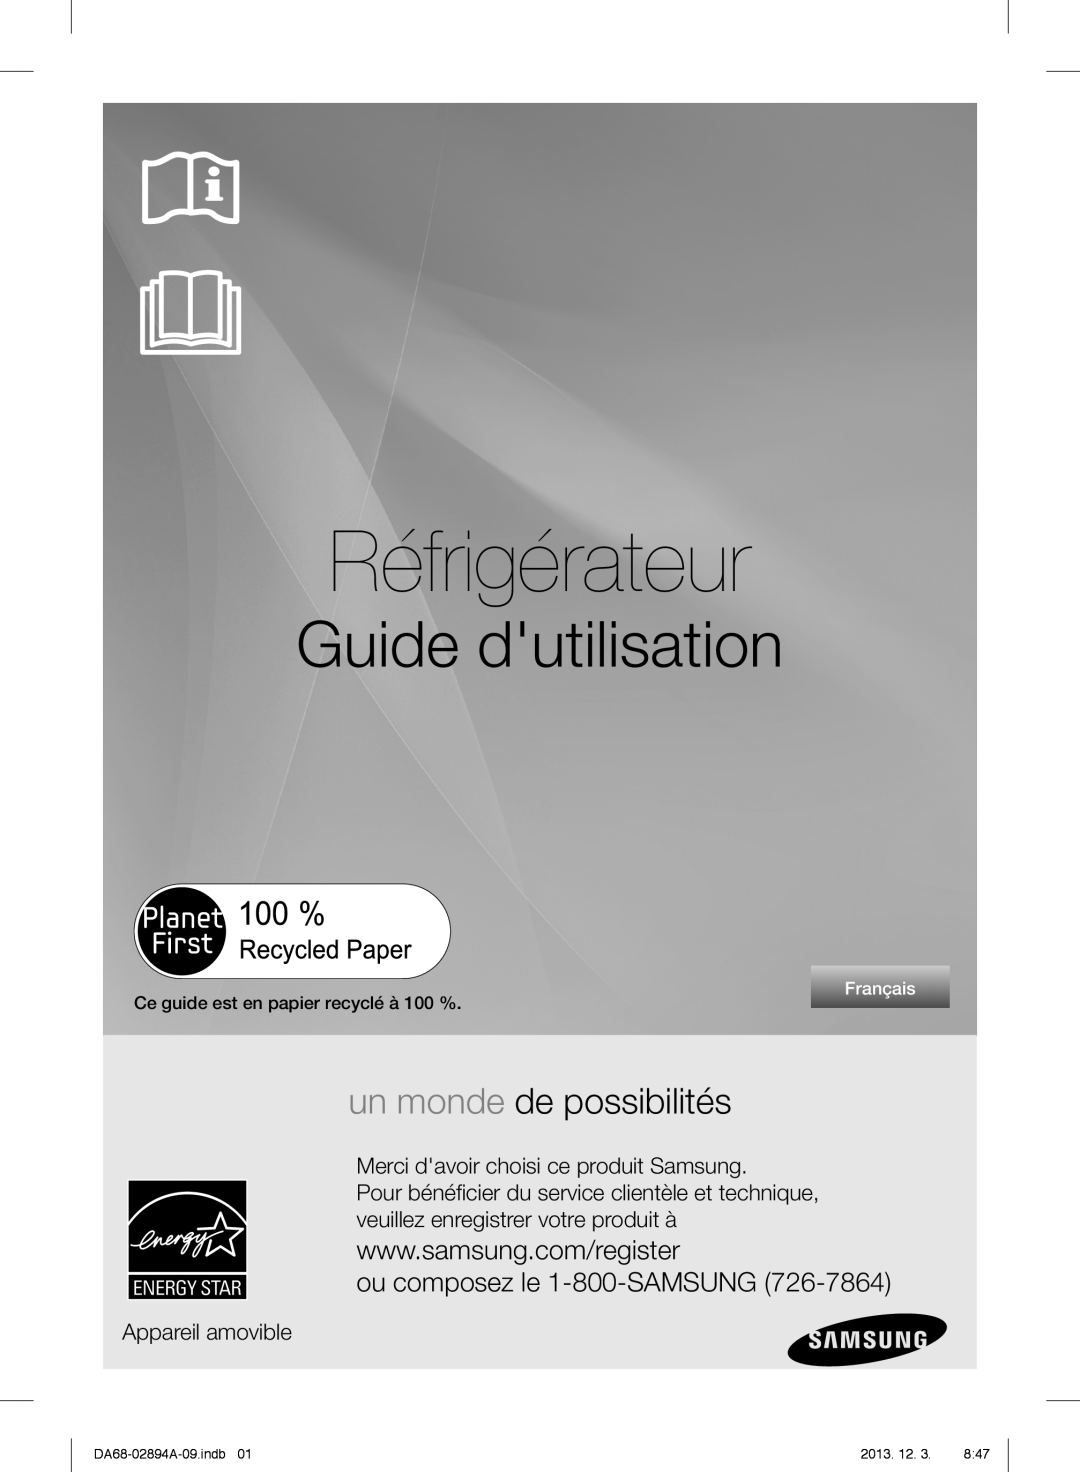 Samsung RF31FMEDBSR Réfrigérateur, Guide dutilisation, un monde de possibilités, ou composez le 1-800-SAMSUNG, Français 